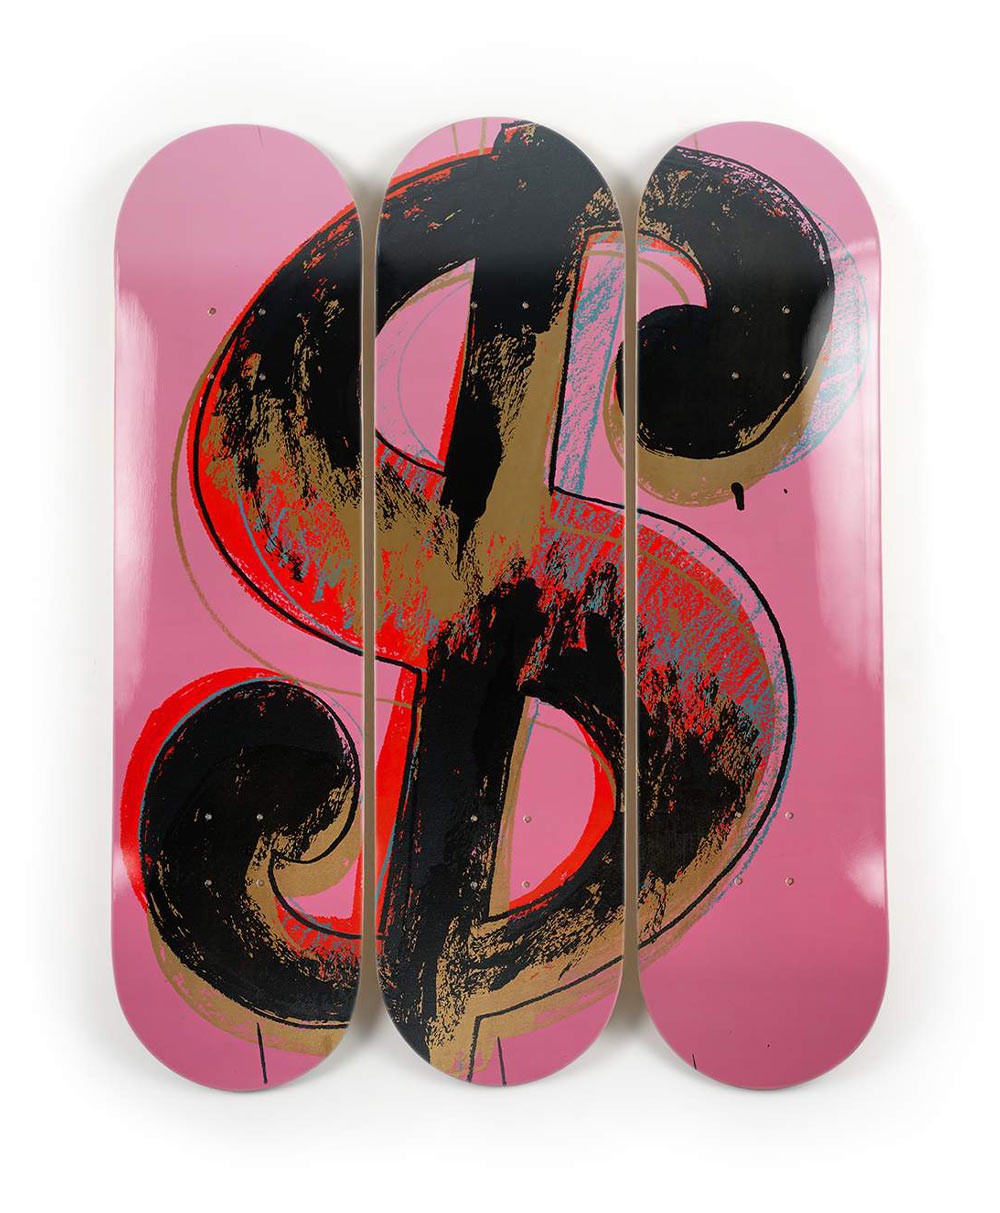 Produktbild "Dollar Sign Pink" designed by Andy Warhol von The Skateroom im RAUM Conceptstore